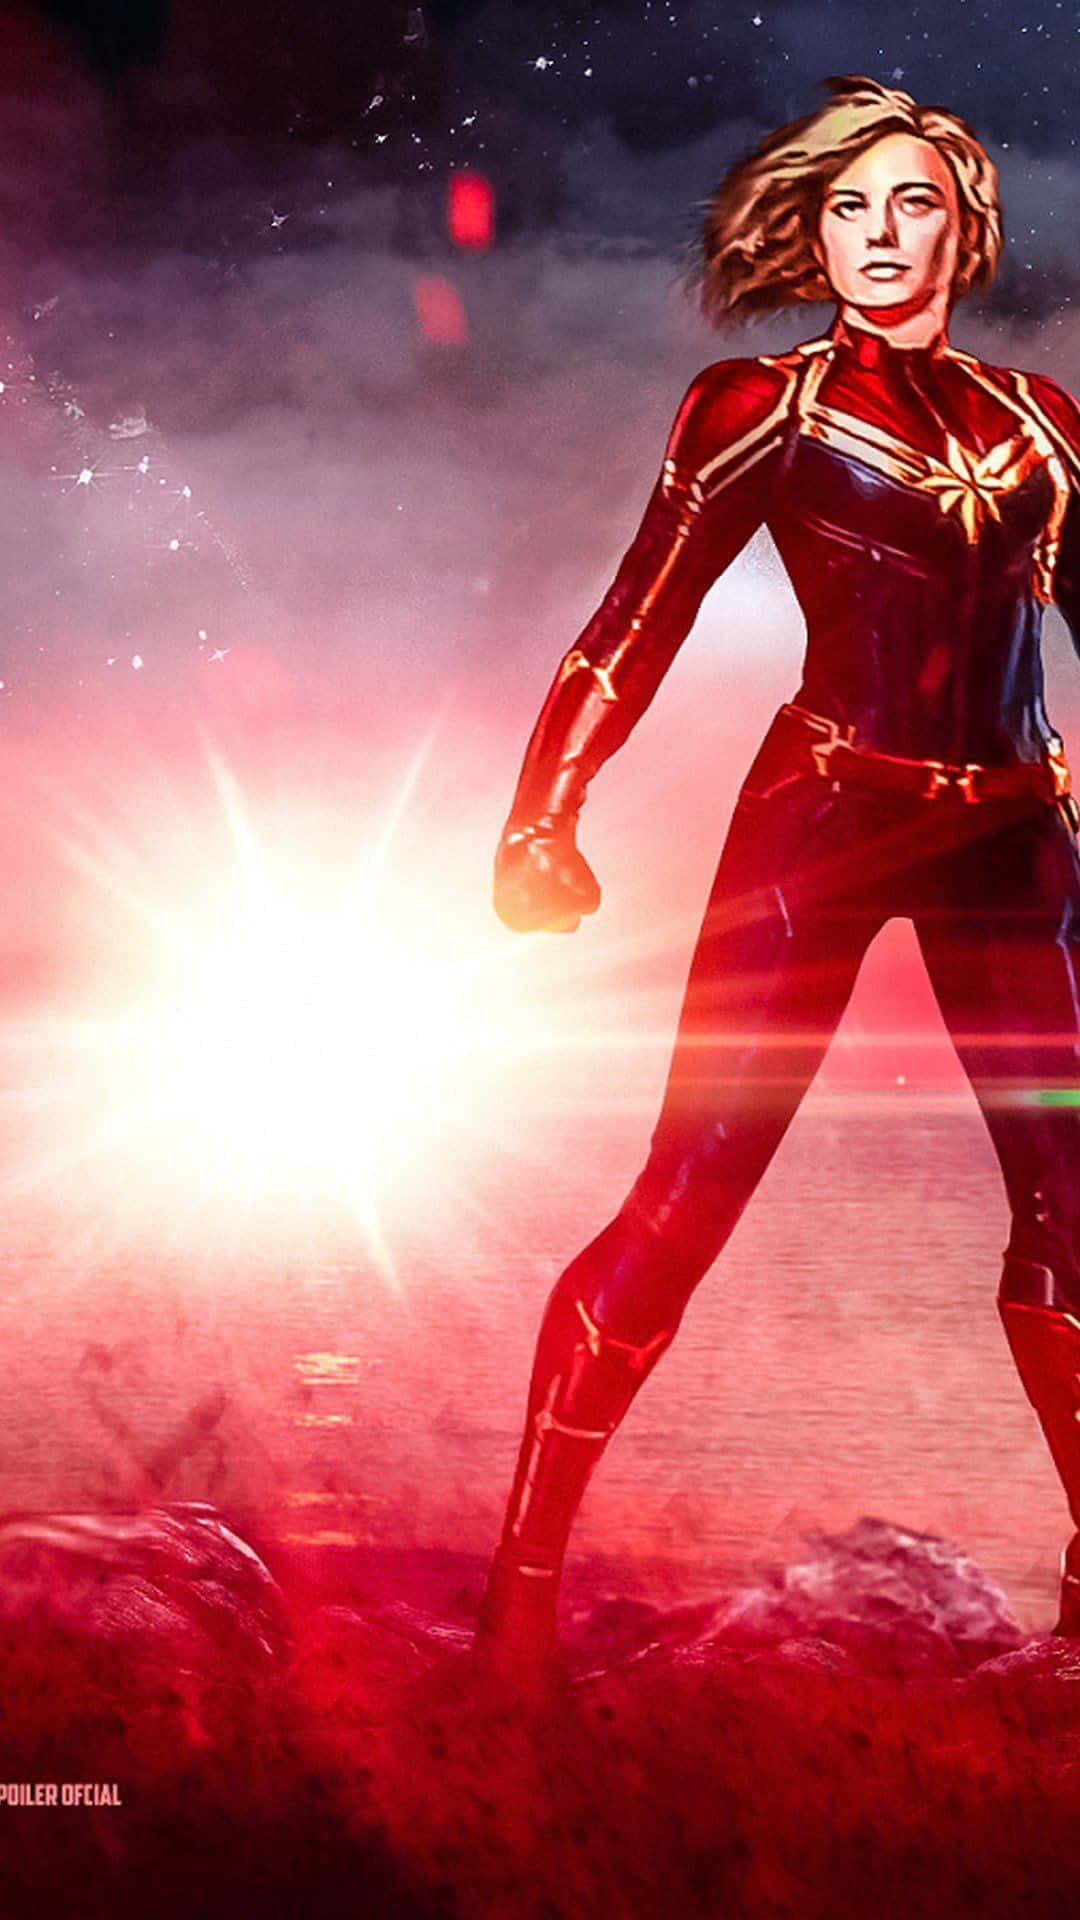 Ilposter In Edizione Limitata 3d Di Captain Marvel Per Celebrare L'esordio Cinematografico Dell'eroe. Sfondo